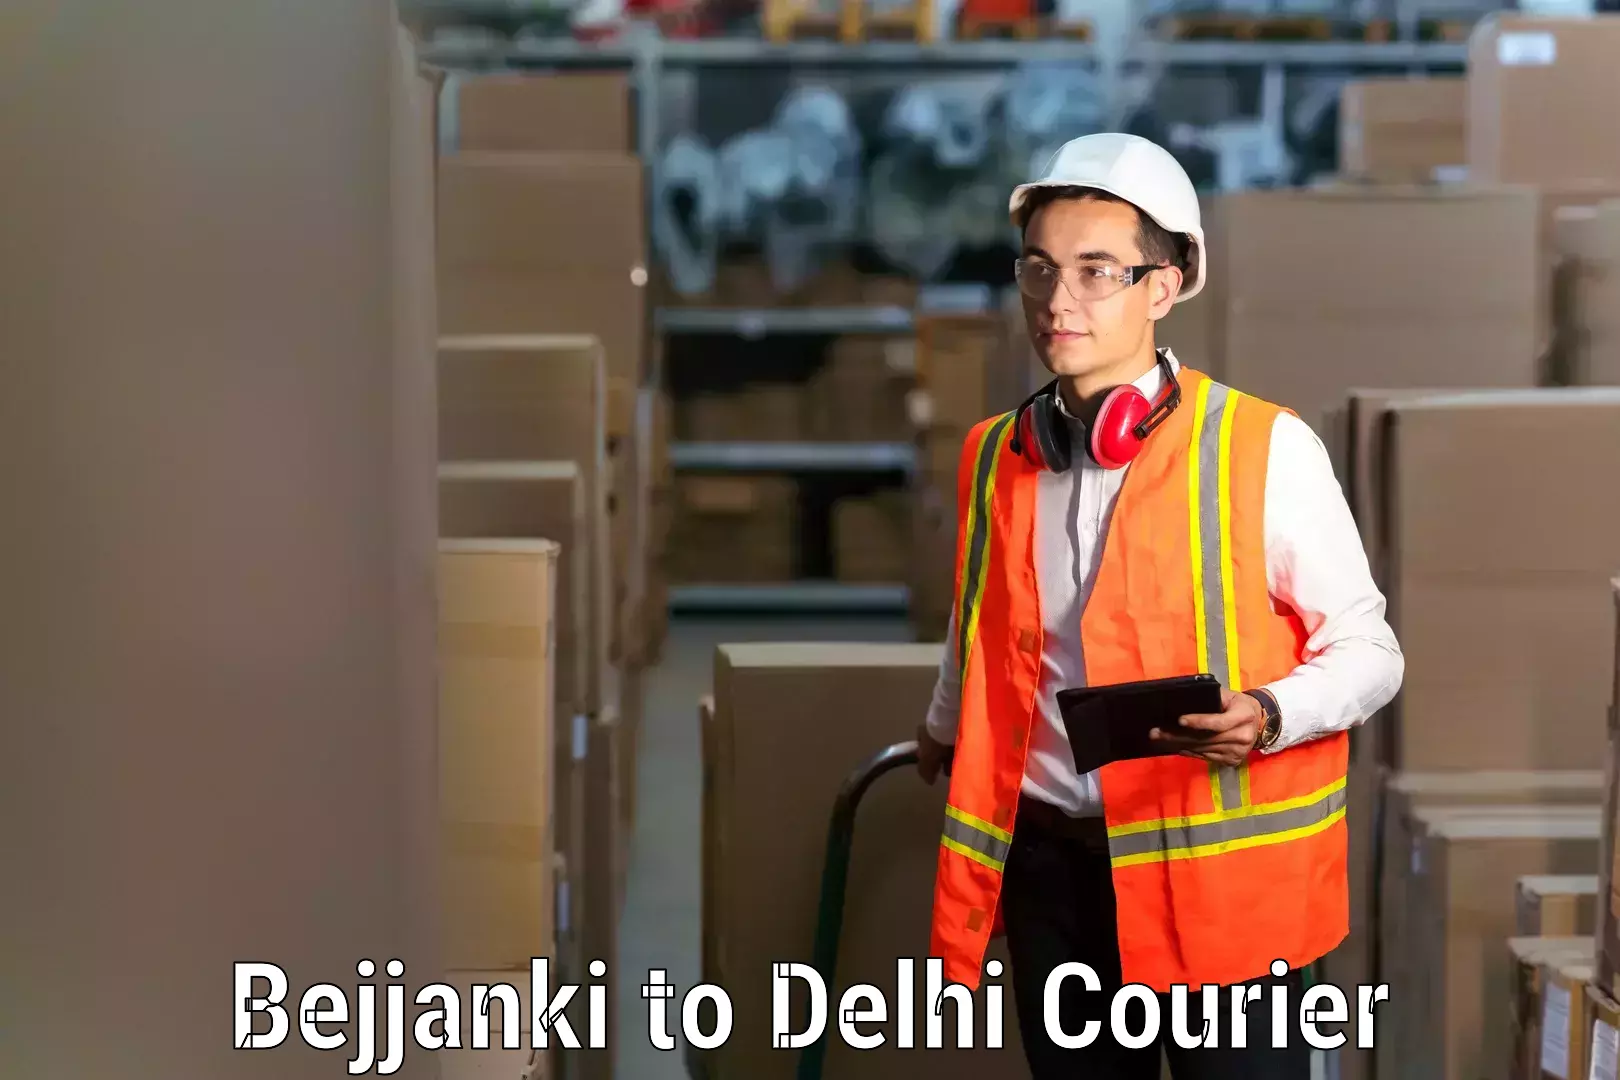 Furniture shipping services Bejjanki to Delhi